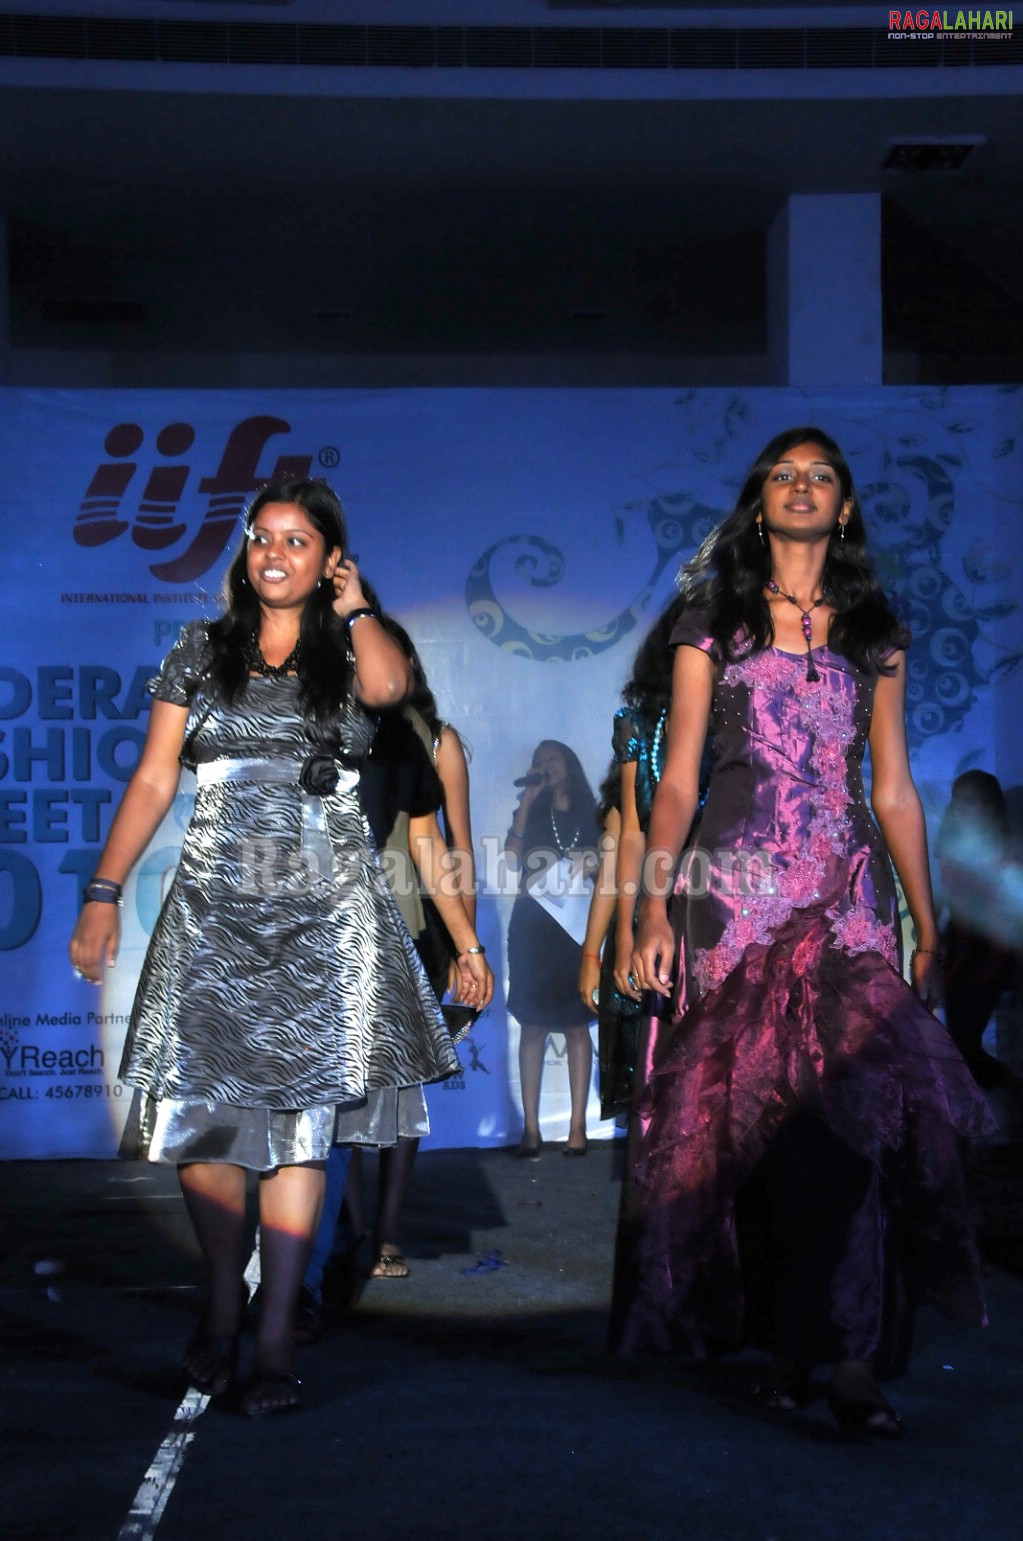 IIFT Fashion Tweet 2010